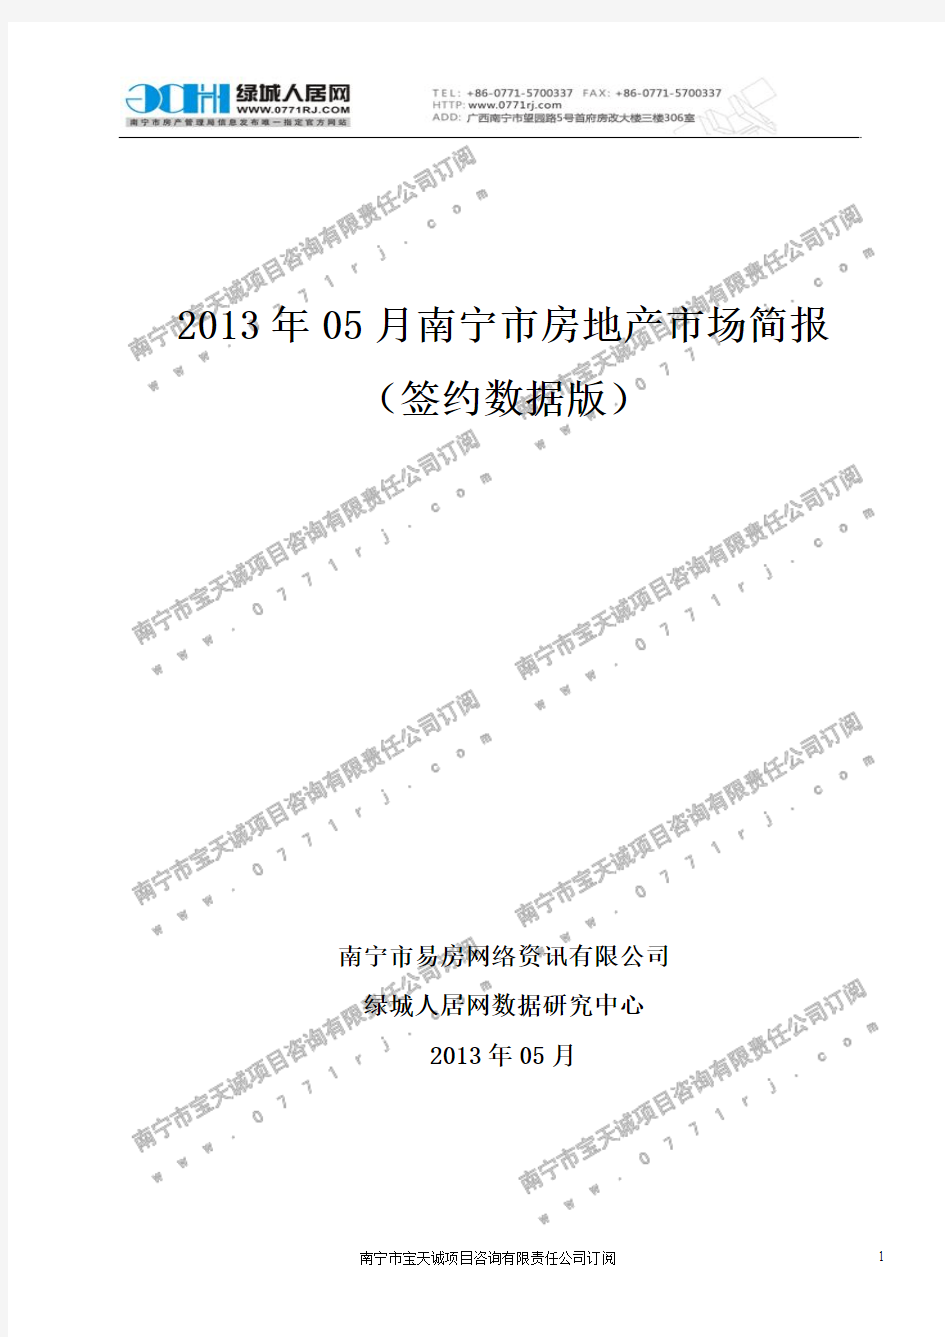 2013年05月南宁市房地产市场简报数据(签约时间)